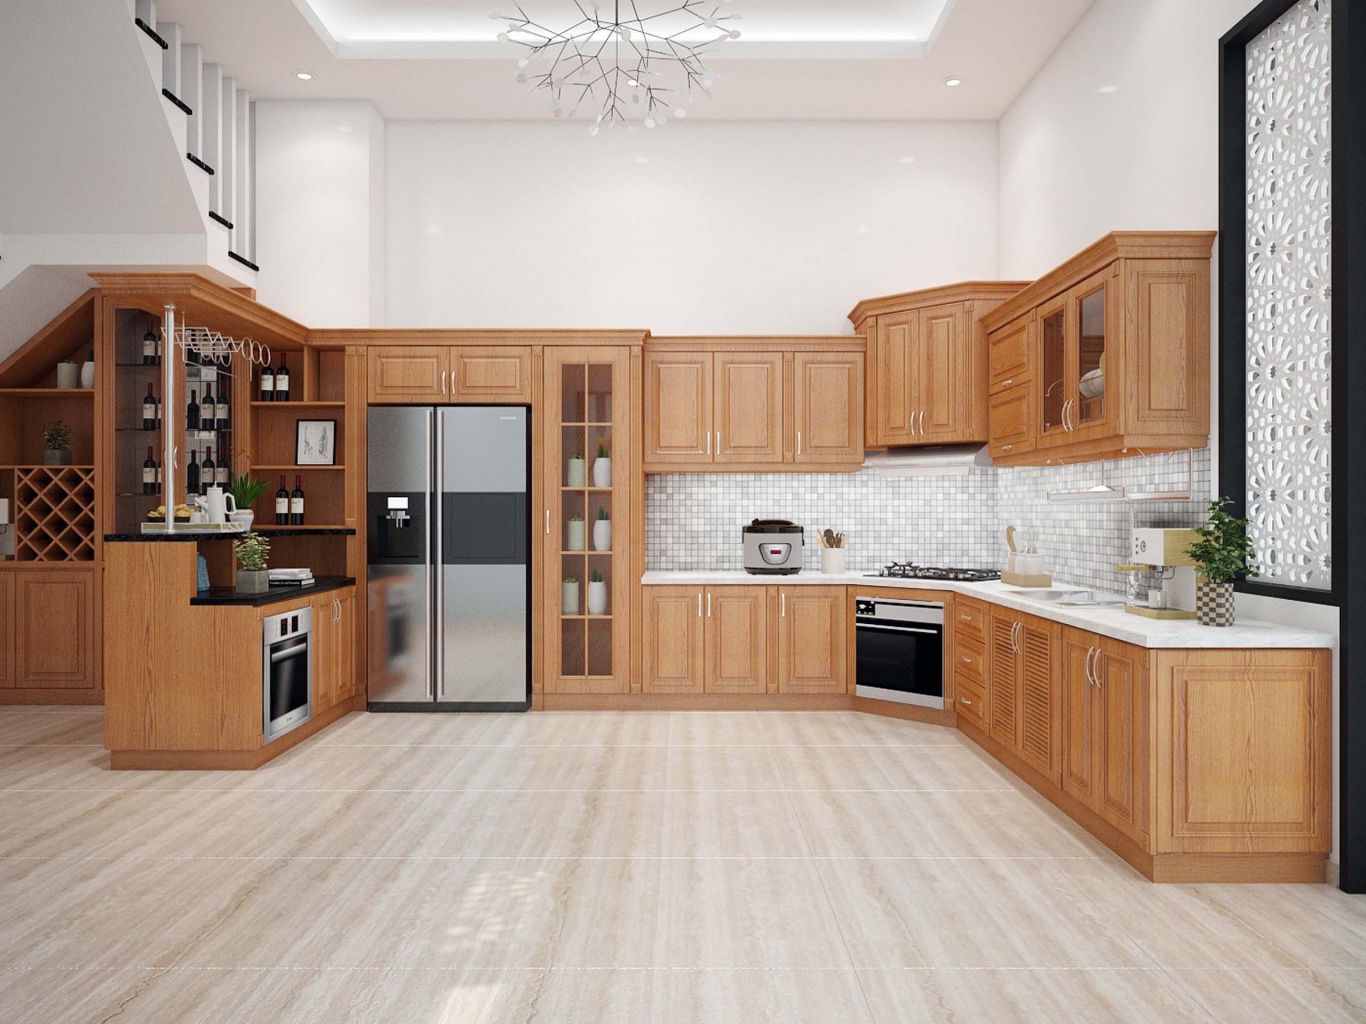 Giá thiết kế nội thất phòng bếp gỗ tự nhiên phụ thuộc loại gỗ sử dụng